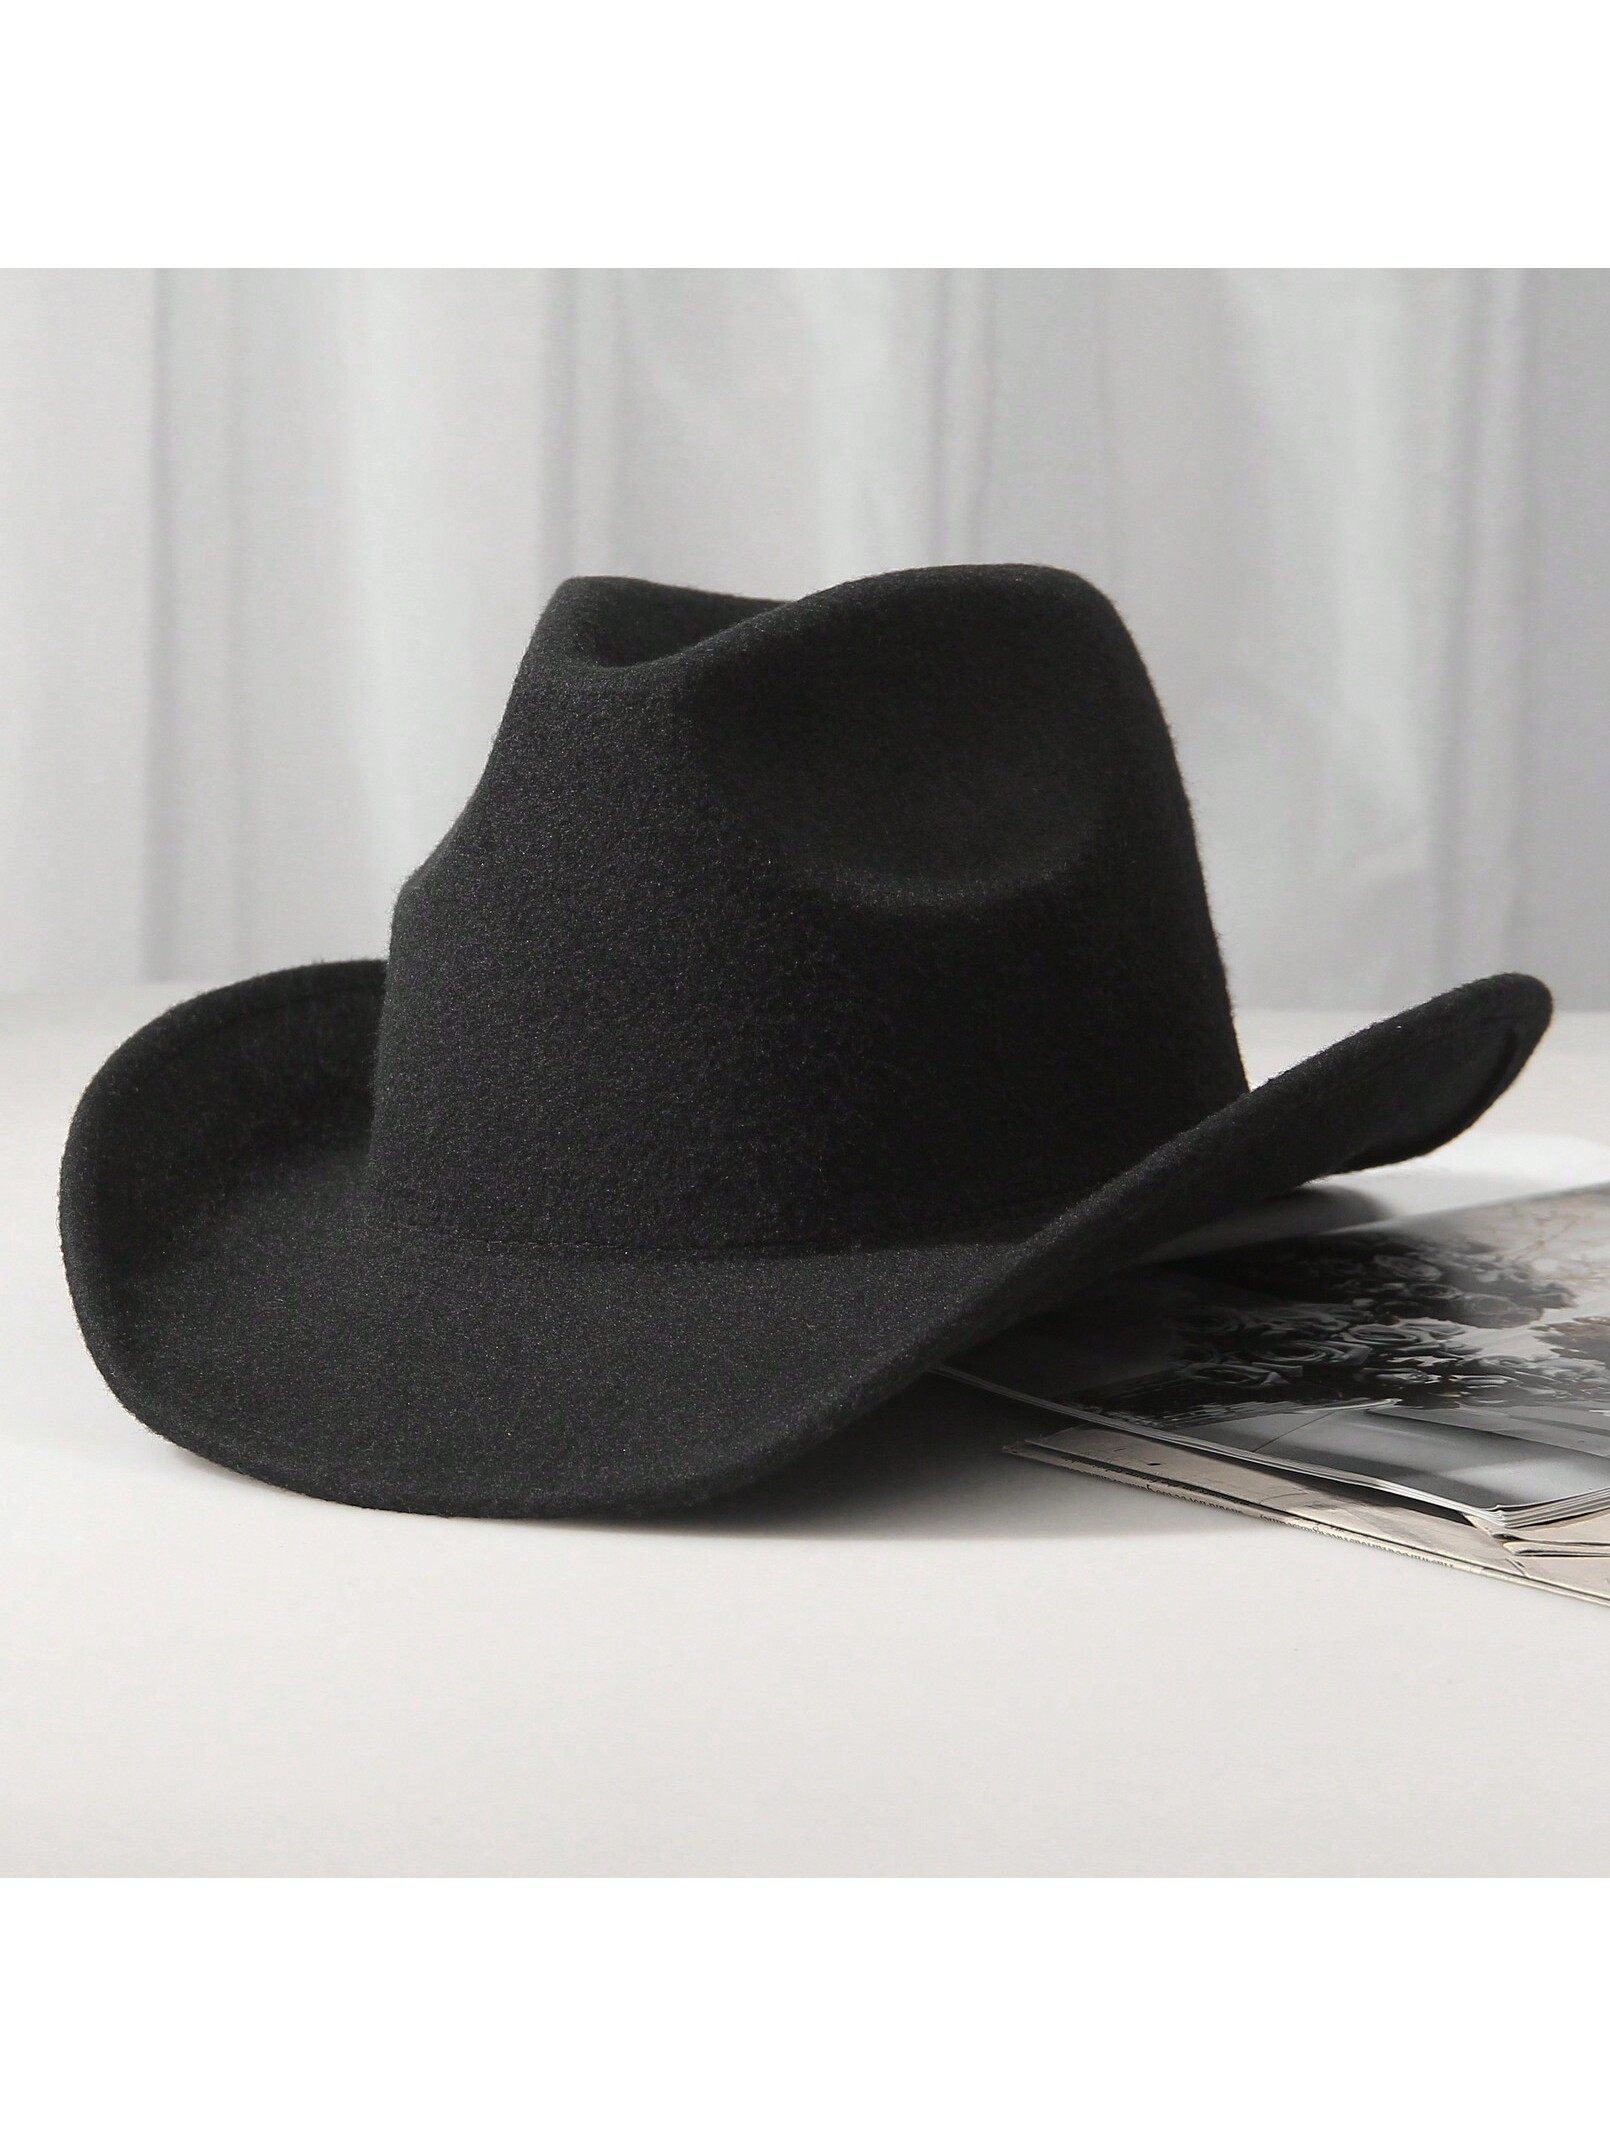 шляпа ковбойская женская красная ковбой набор 10 шт 1шт унисекс шерстяная ковбойская шляпа-ковбойская шляпа в западном стиле черная ковбойская шляпа, черный